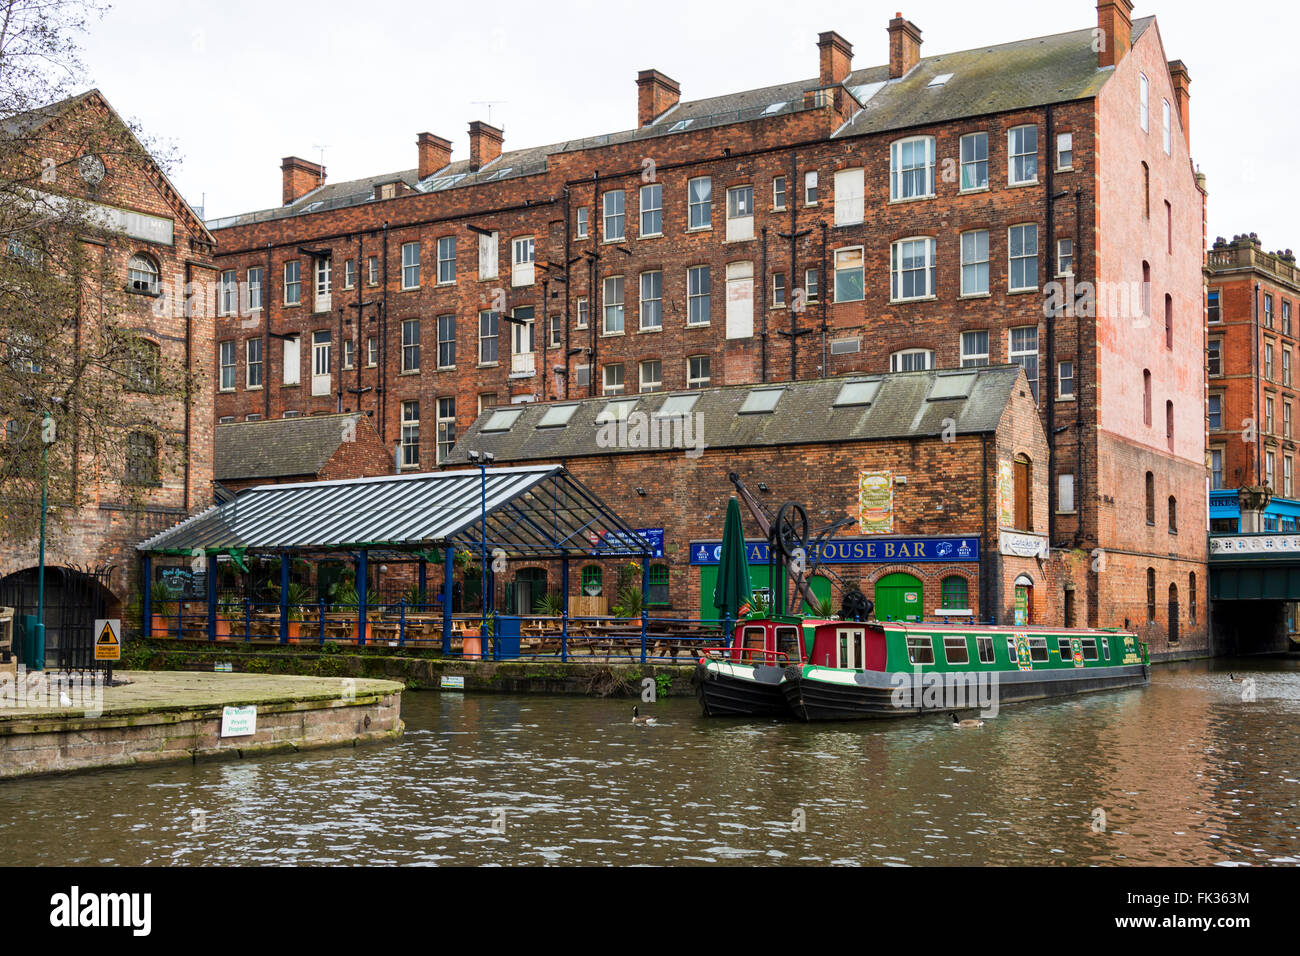 The Canalhouse bar across the Nottingham Canal, Nottingham, England, UK Stock Photo